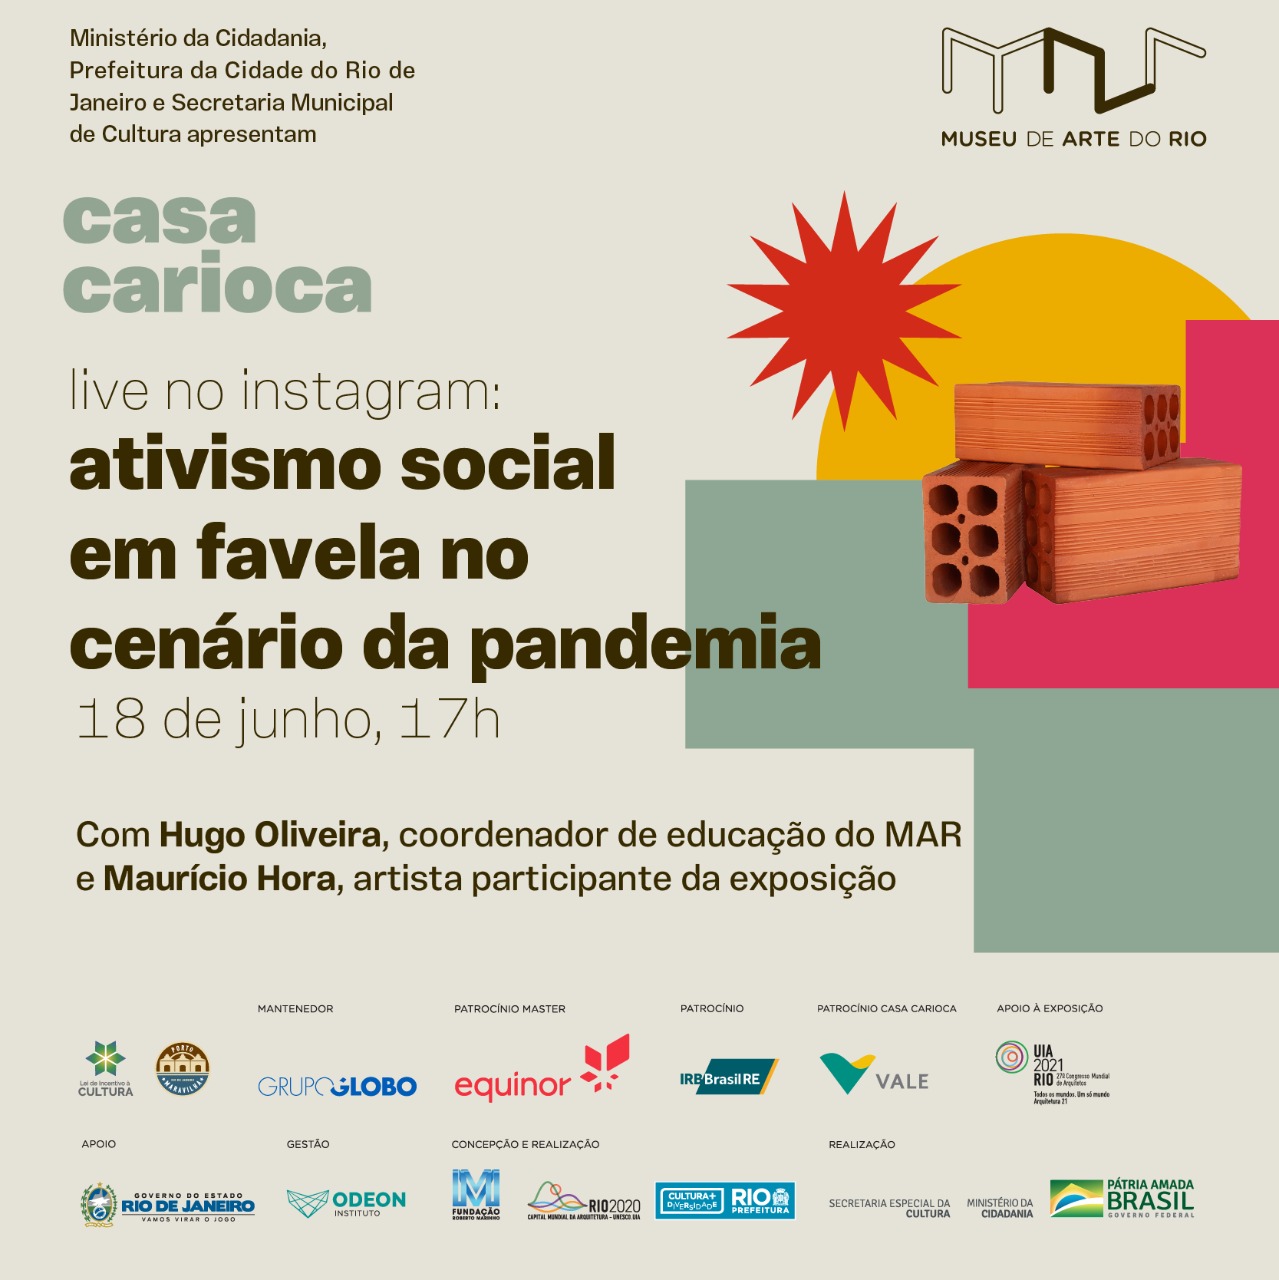 Live - L'attivismo sociale di Favela nello scenario pandemico, AS. Rivelazione.